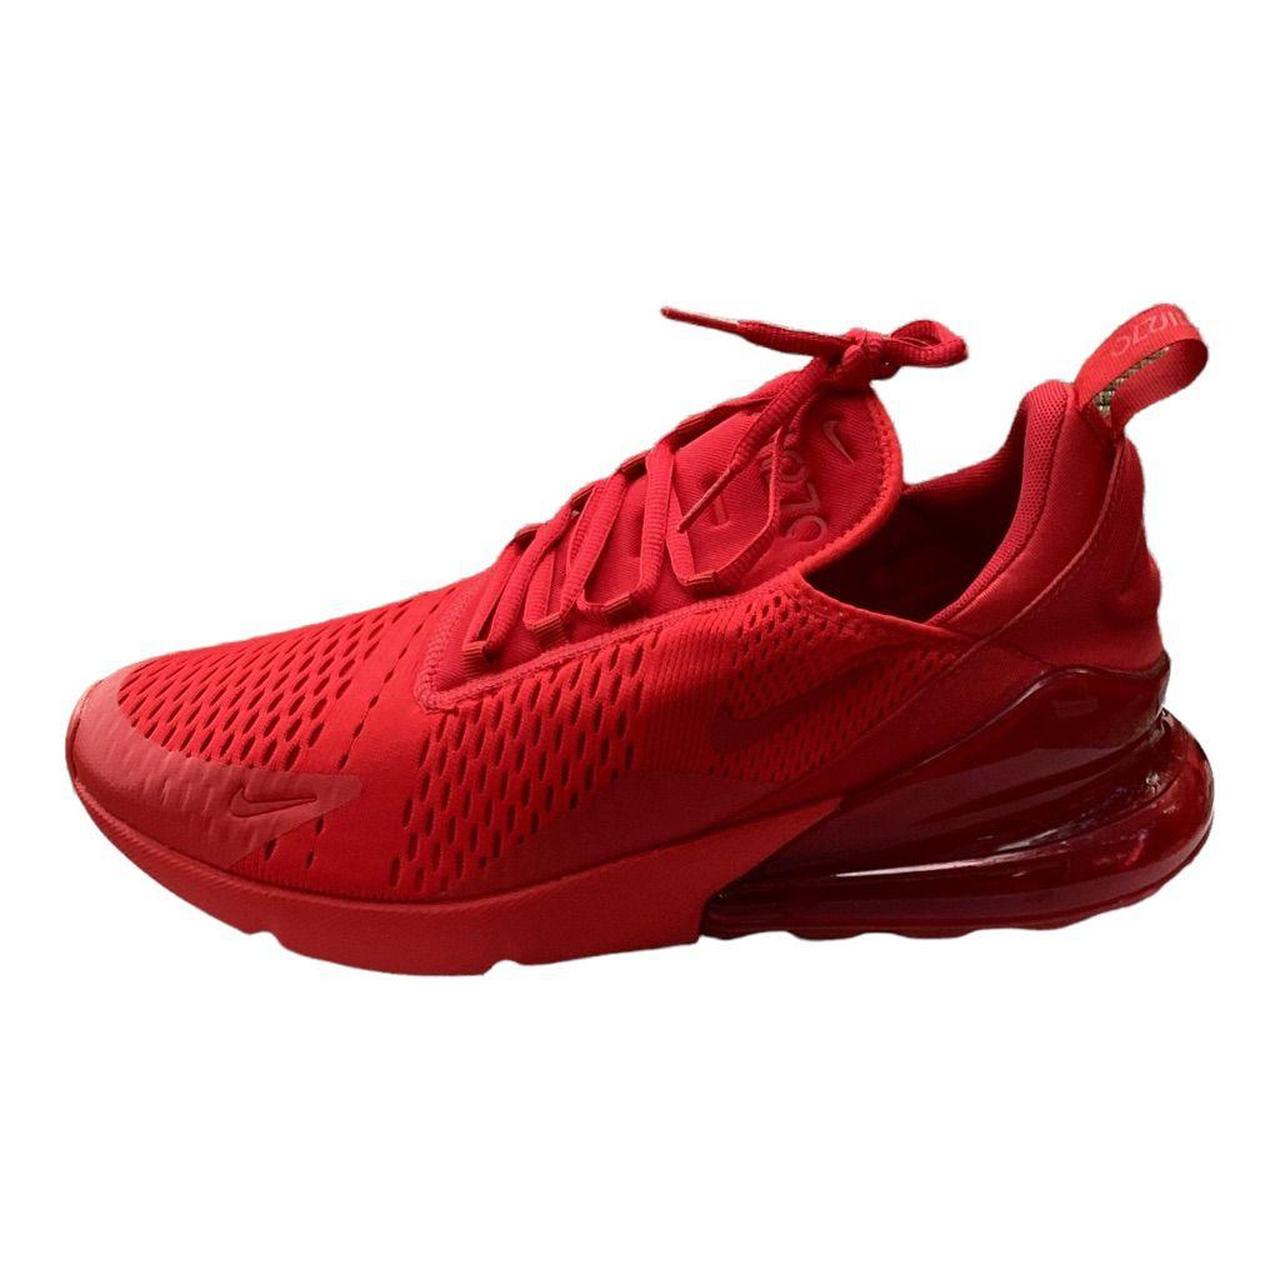 Nike Air Max 270 Triple Red Sneaker Running Shoes Depop